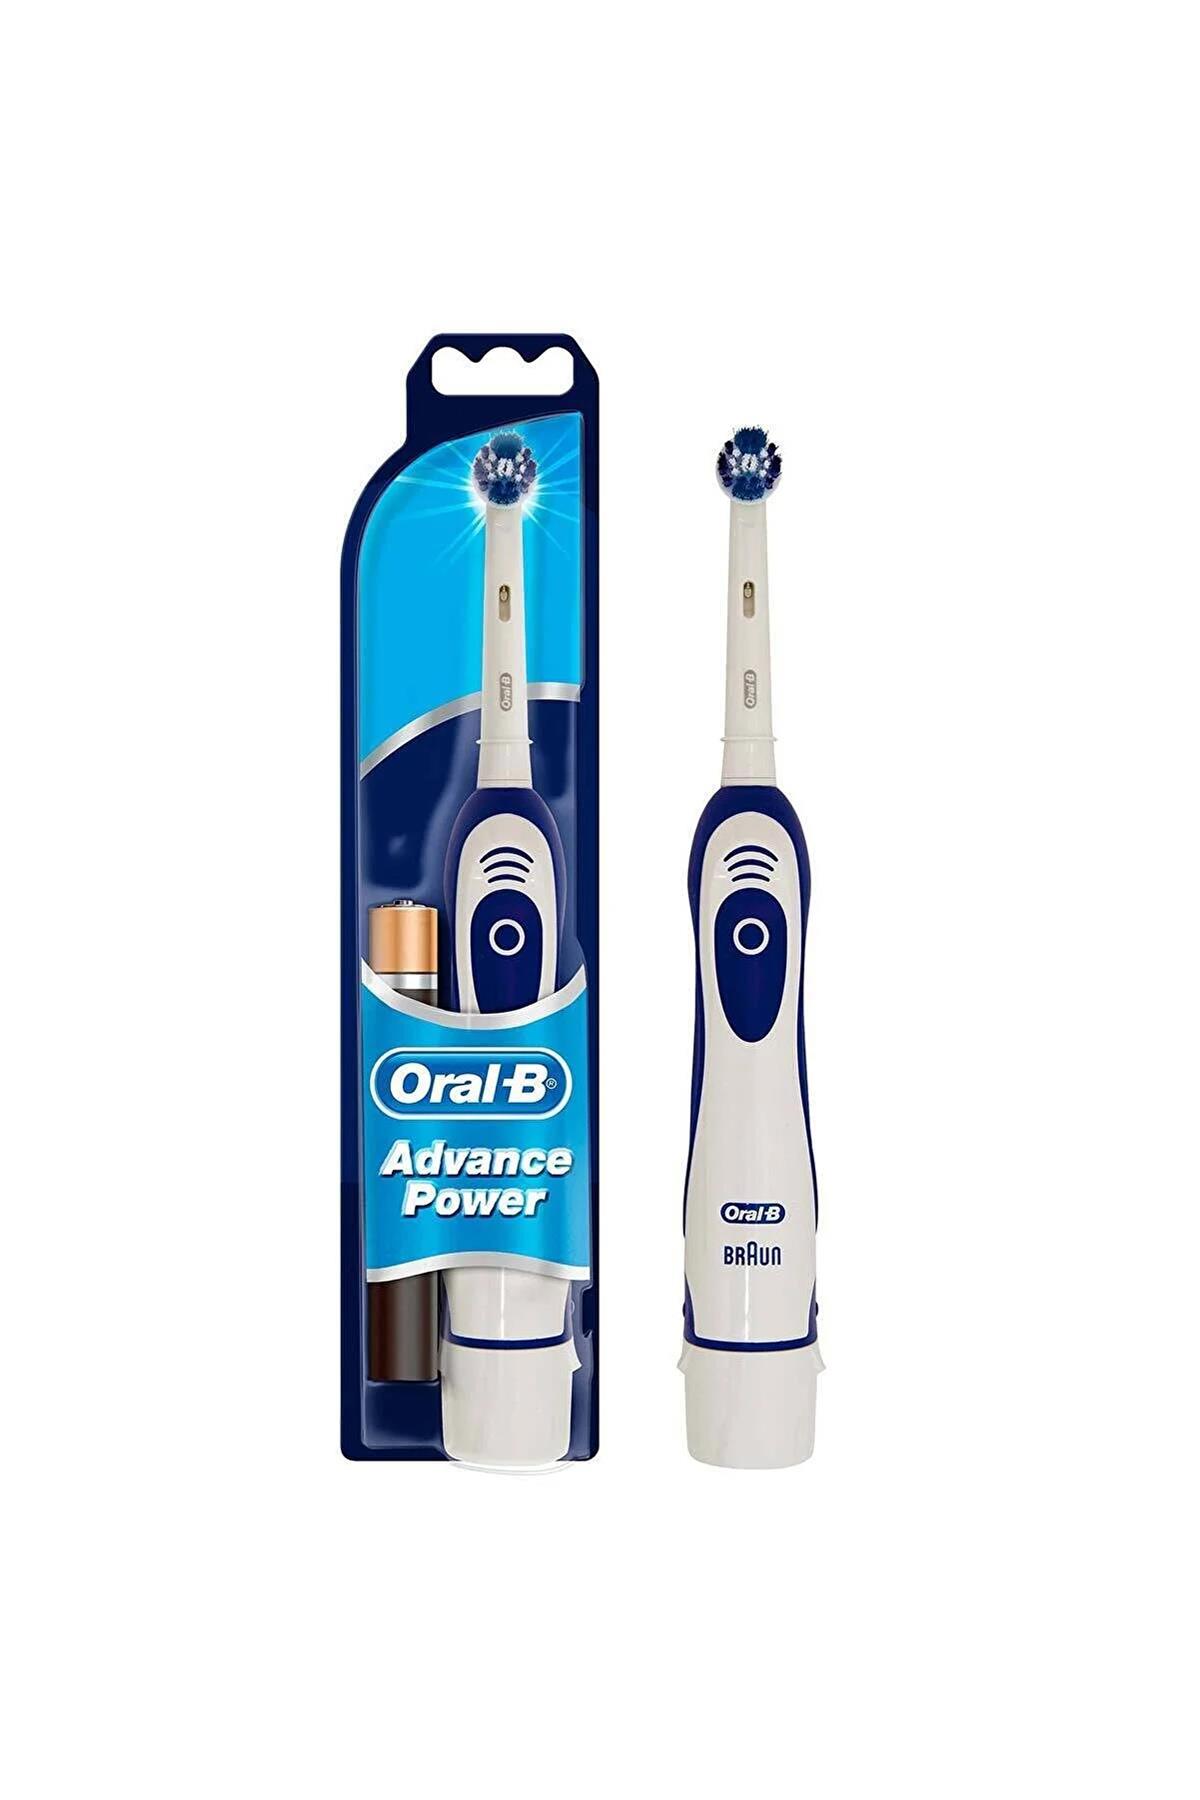 oral-b-pilli-dis-fircasi-precision-clean-6955-1.jpg